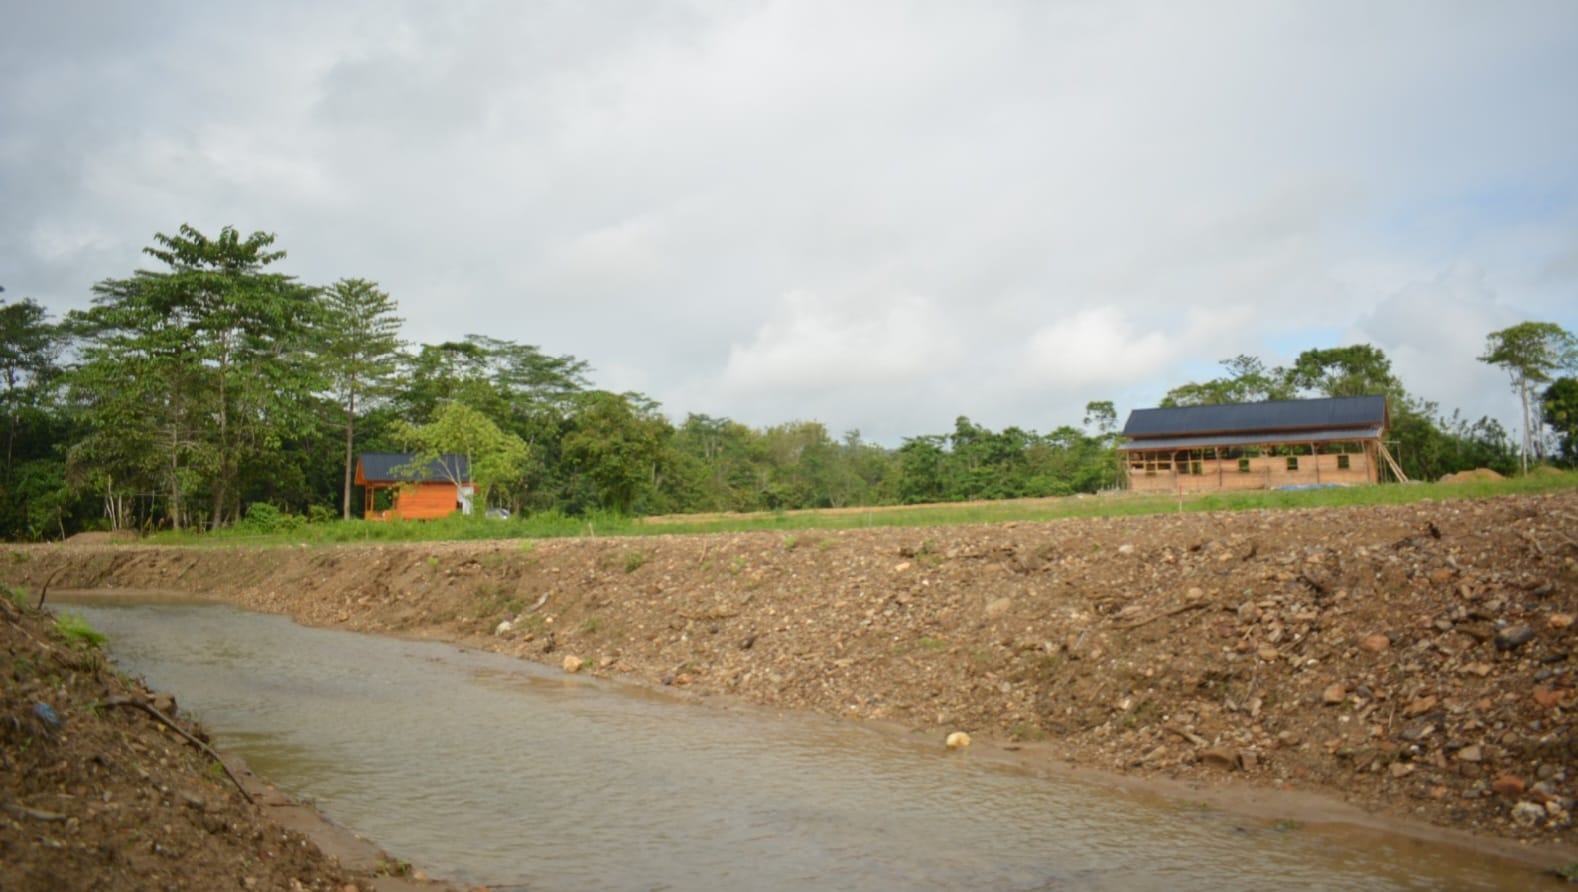 Objek Wisata Konda River Land Tawarkan Investasi Lahan Kaplingan Harga Terjangkau